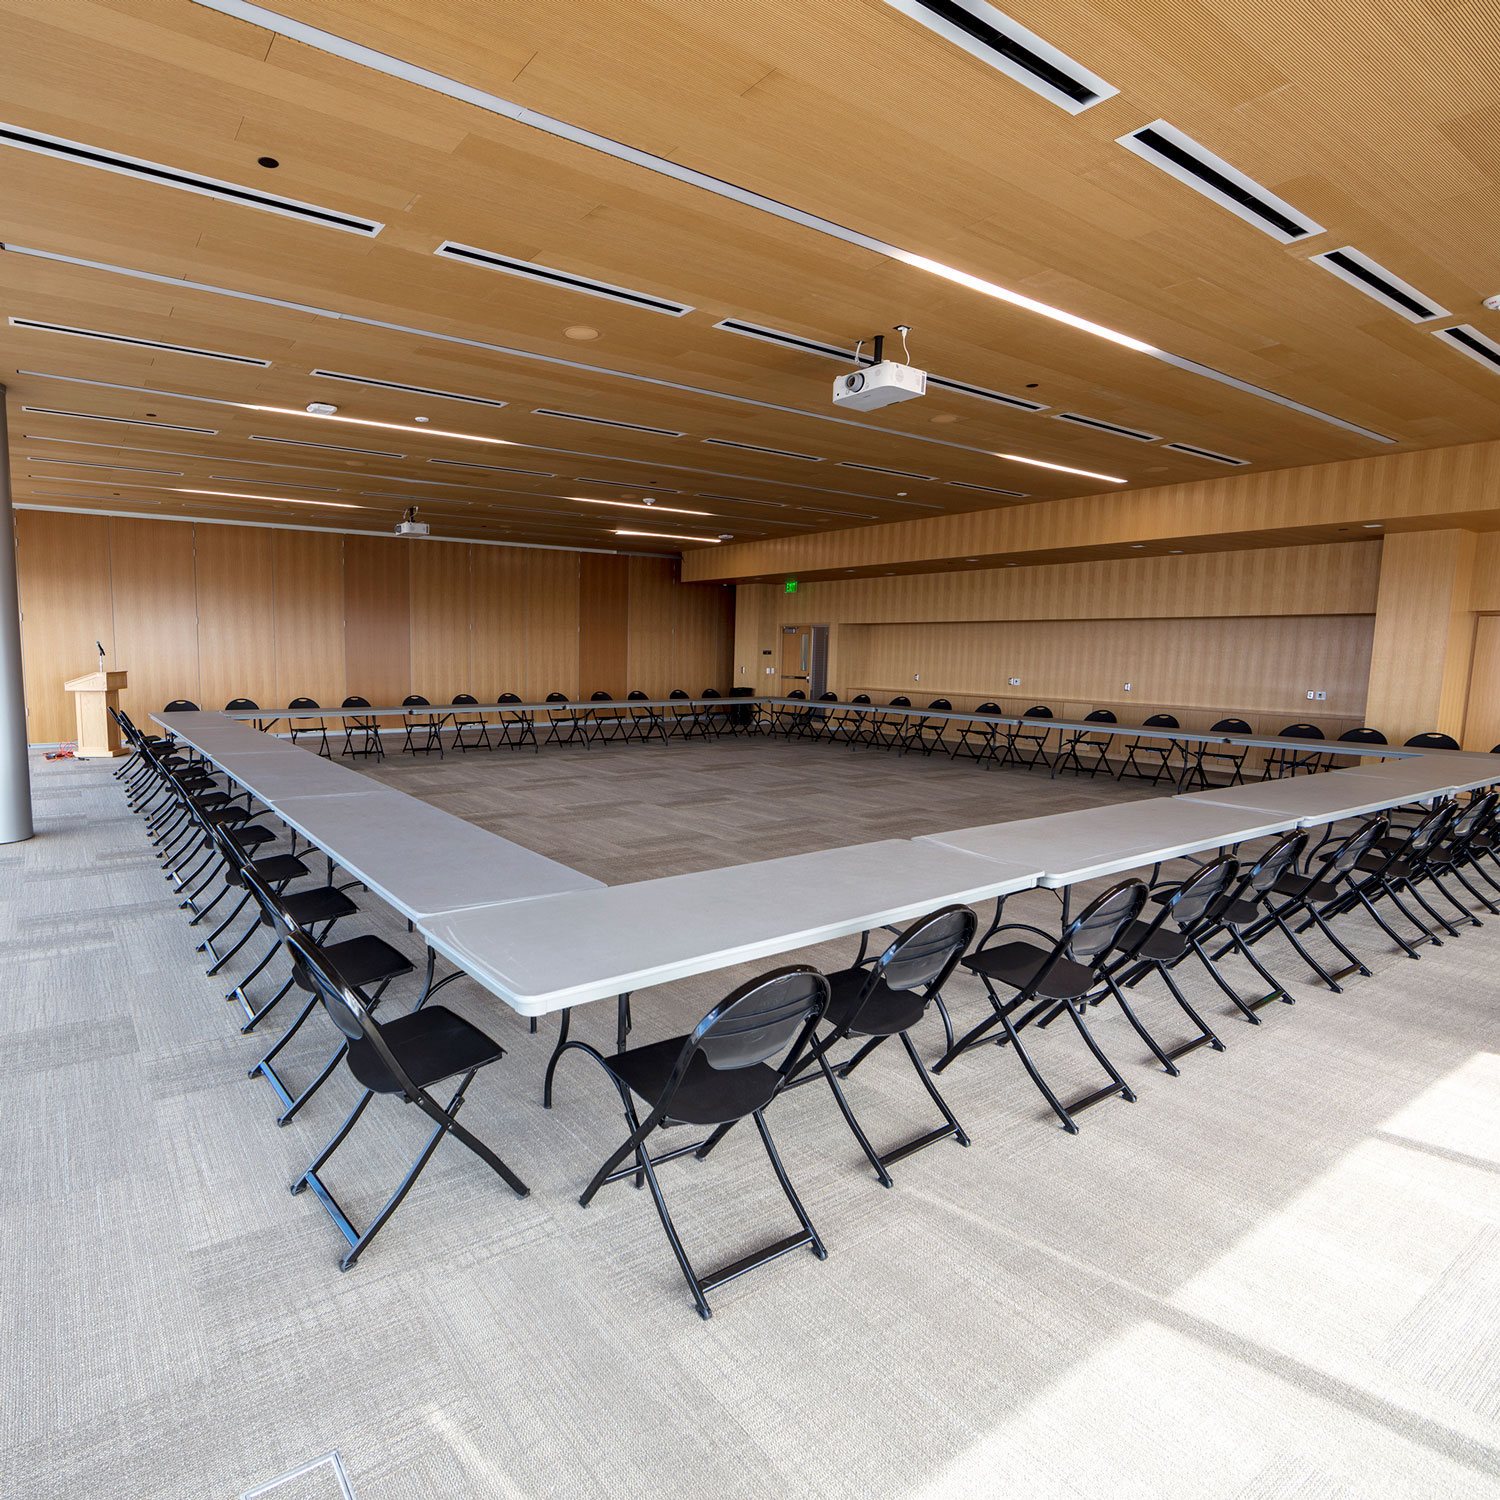 UVU Event Space - Classroom Building - CB 511 